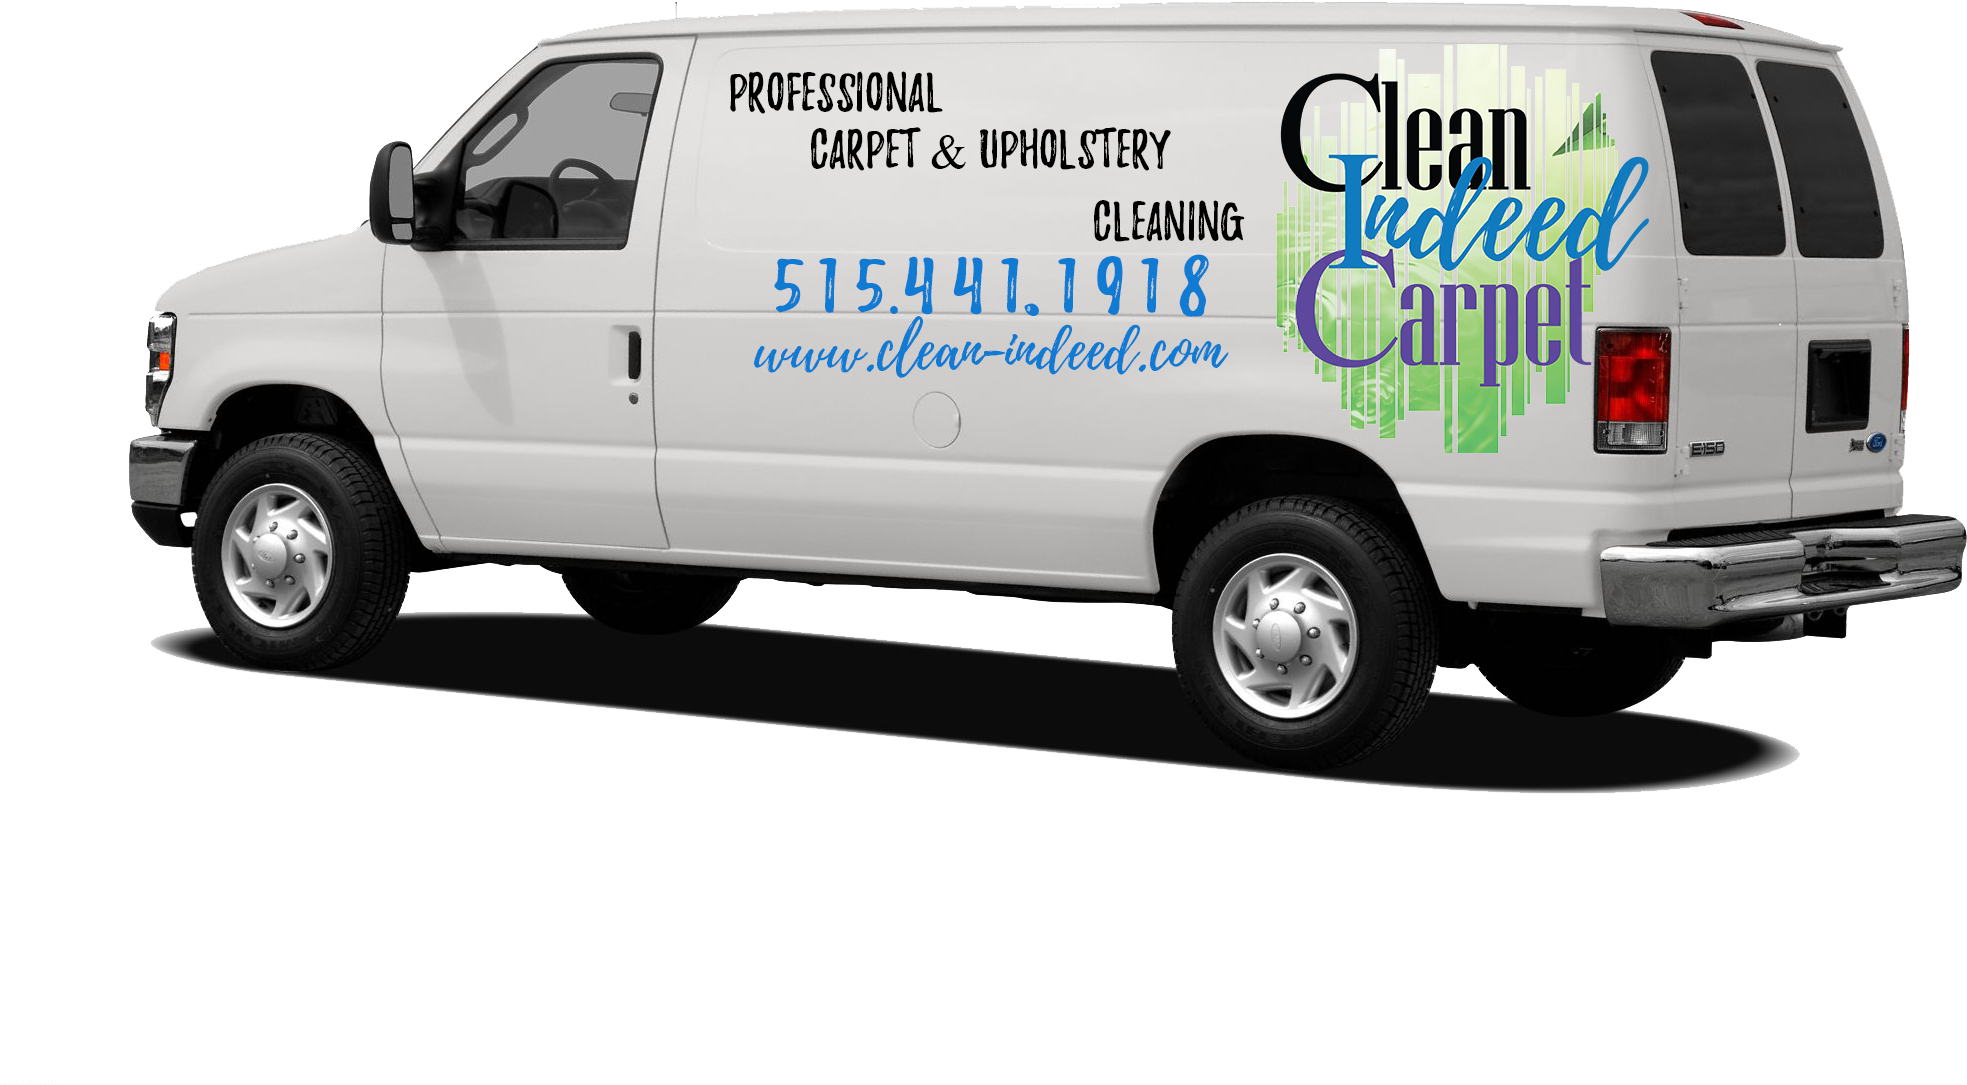 Clean Indeed Carpet Cleaning Van